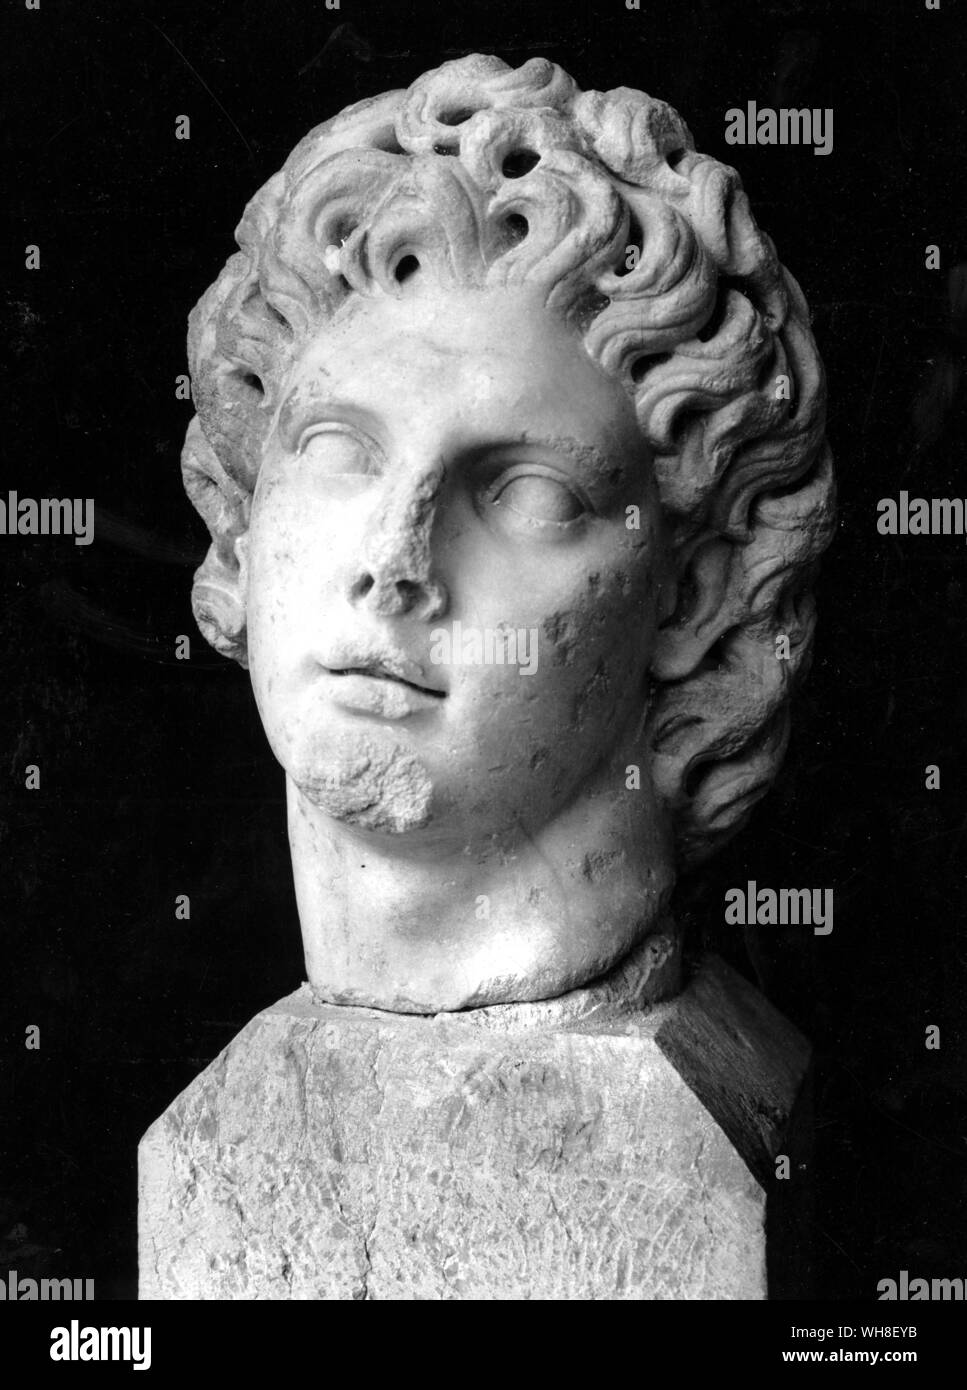 Kopf von Alexander dem Großen (356 v. Chr.-323 v. Chr.), König von Makedonien 336-323 v. Chr.. Er gilt als einer der erfolgreichsten Kommandeure in der Geschichte der Welt, erobert die meisten der bekannten Welt vor seinem Tod. Die Natur von Alexander, von Mary Renault, Seite 17. Stockfoto